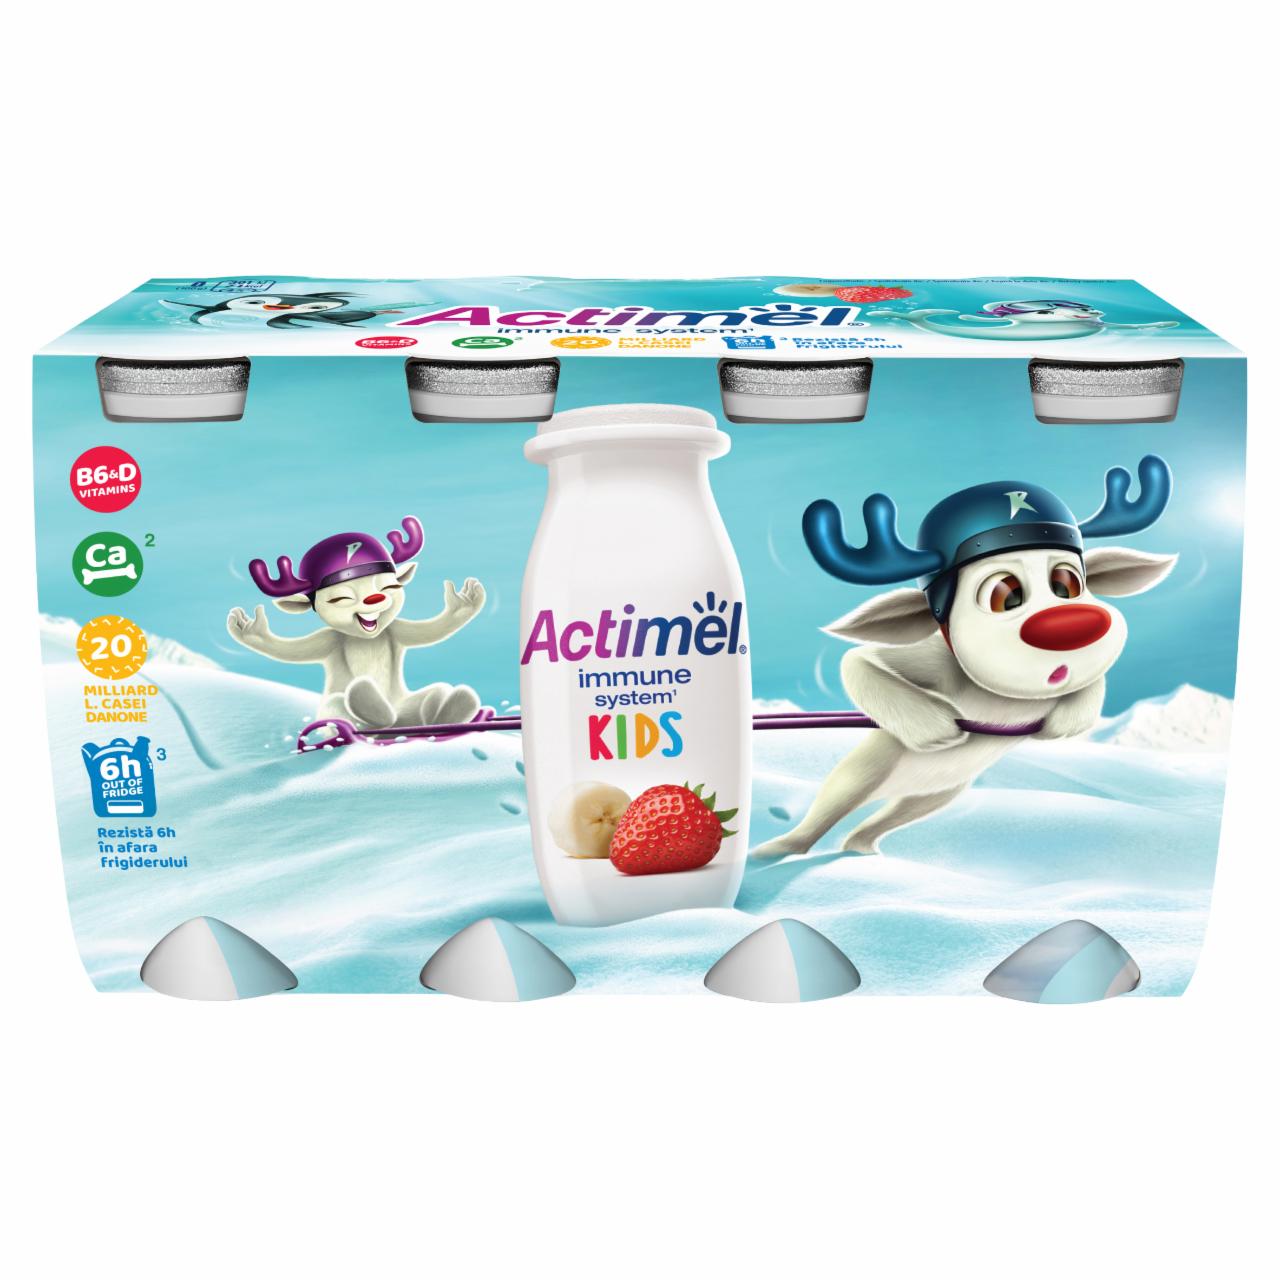 Képek - Danone Actimel Kids zsírszegény, élőflórás, eper-banánízű joghurtital 8 x 100 g (800 g)